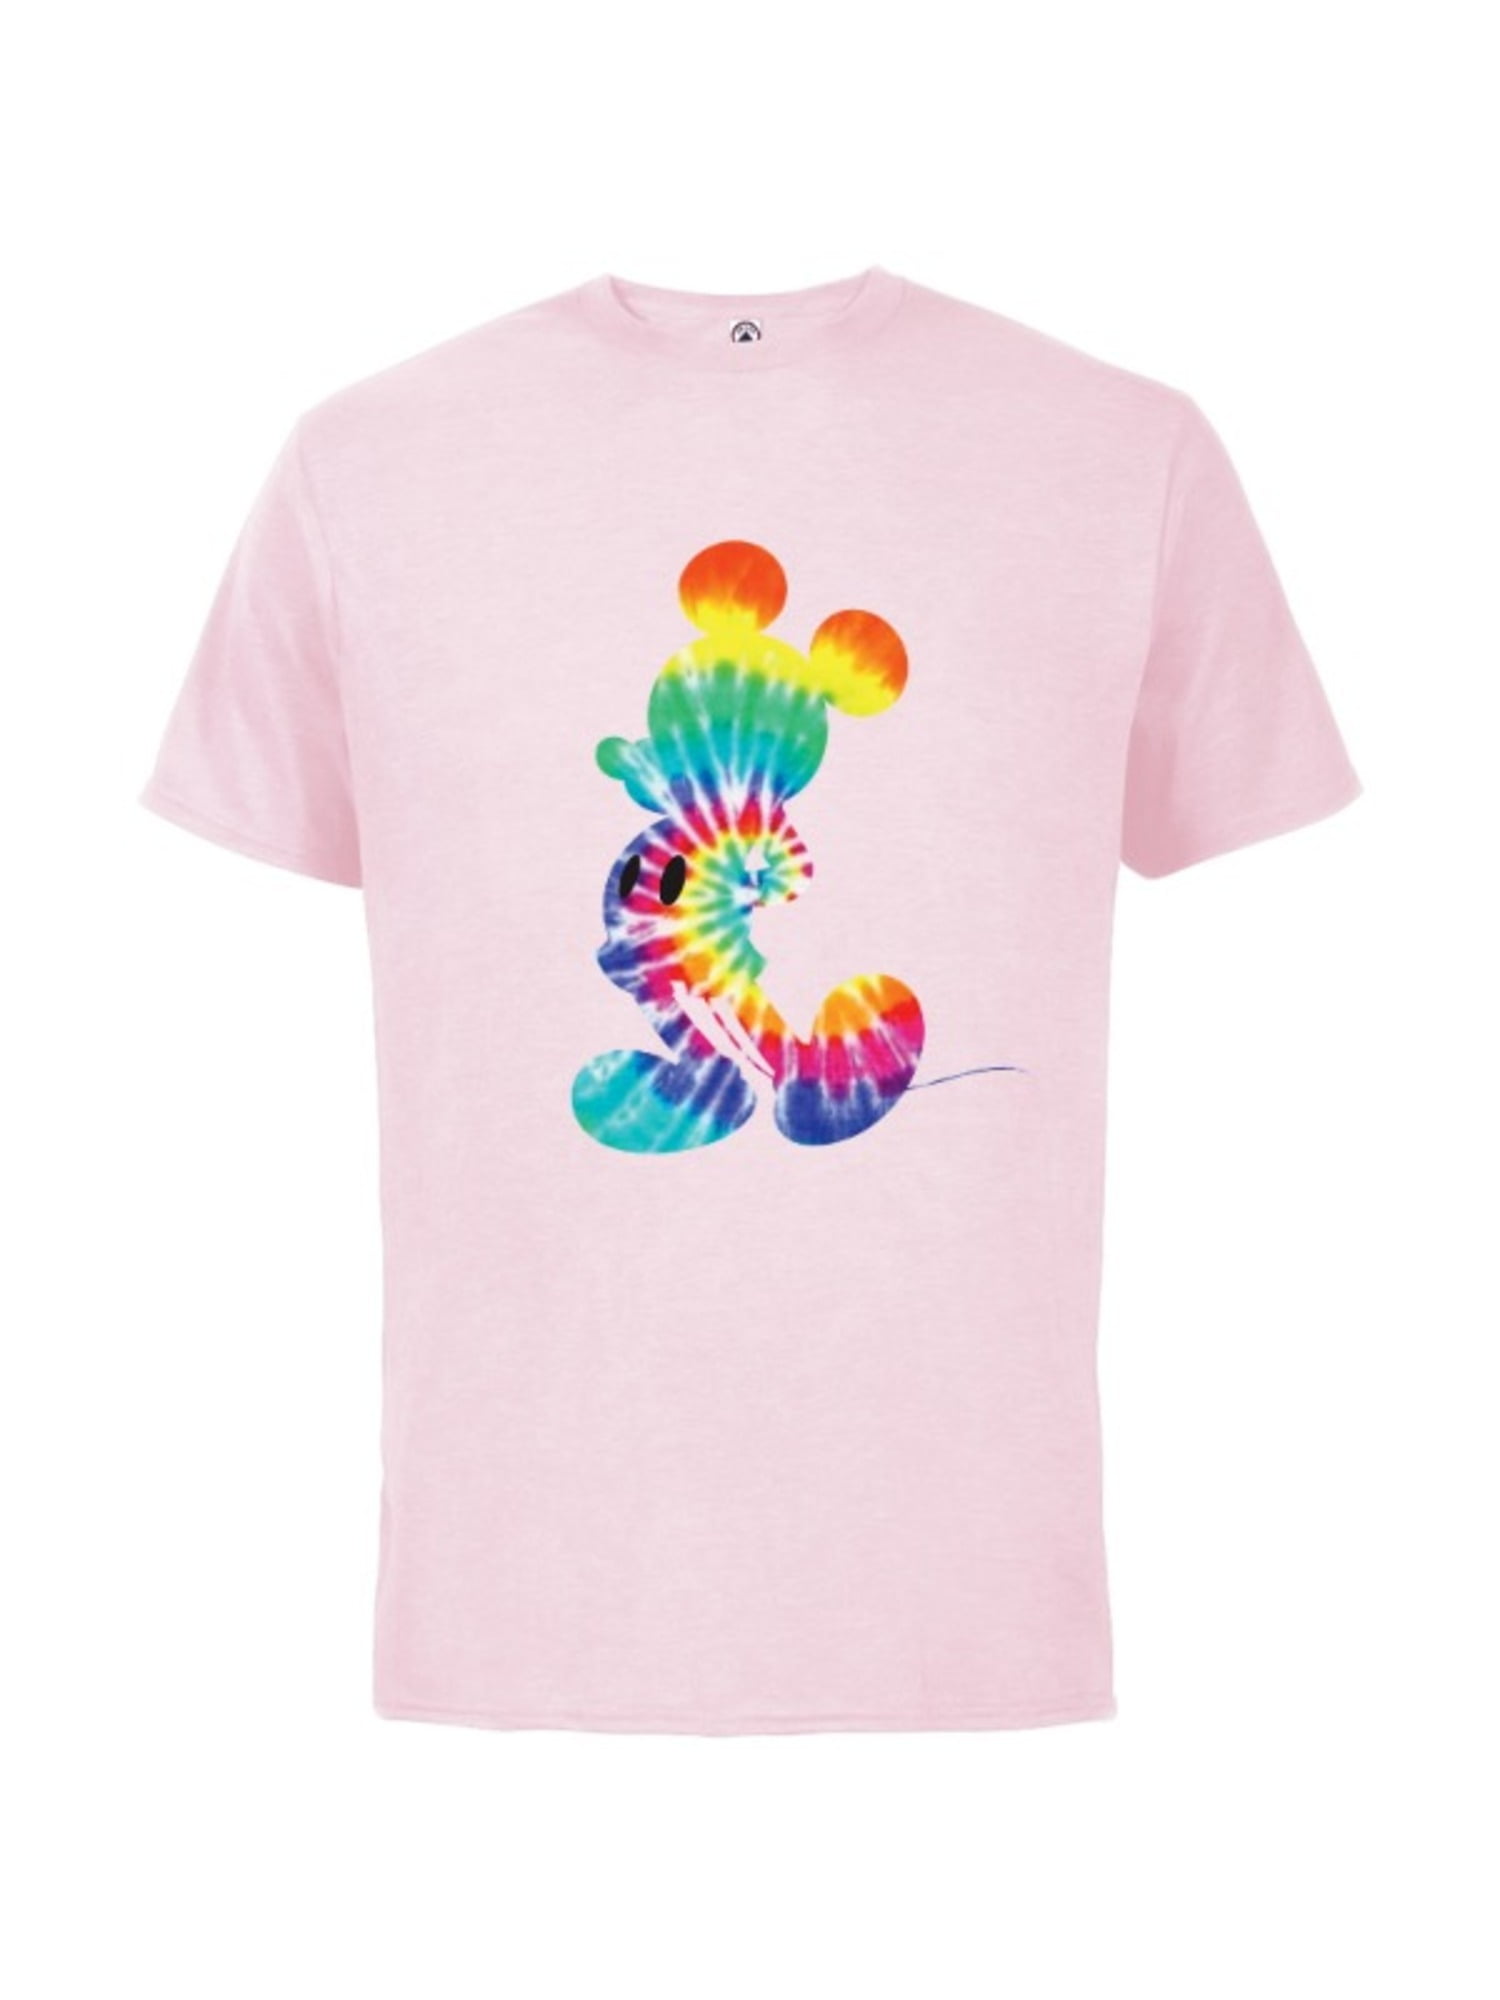 Fashion T-Shirt,Colorful Silhouettes Fashion Personality Customization